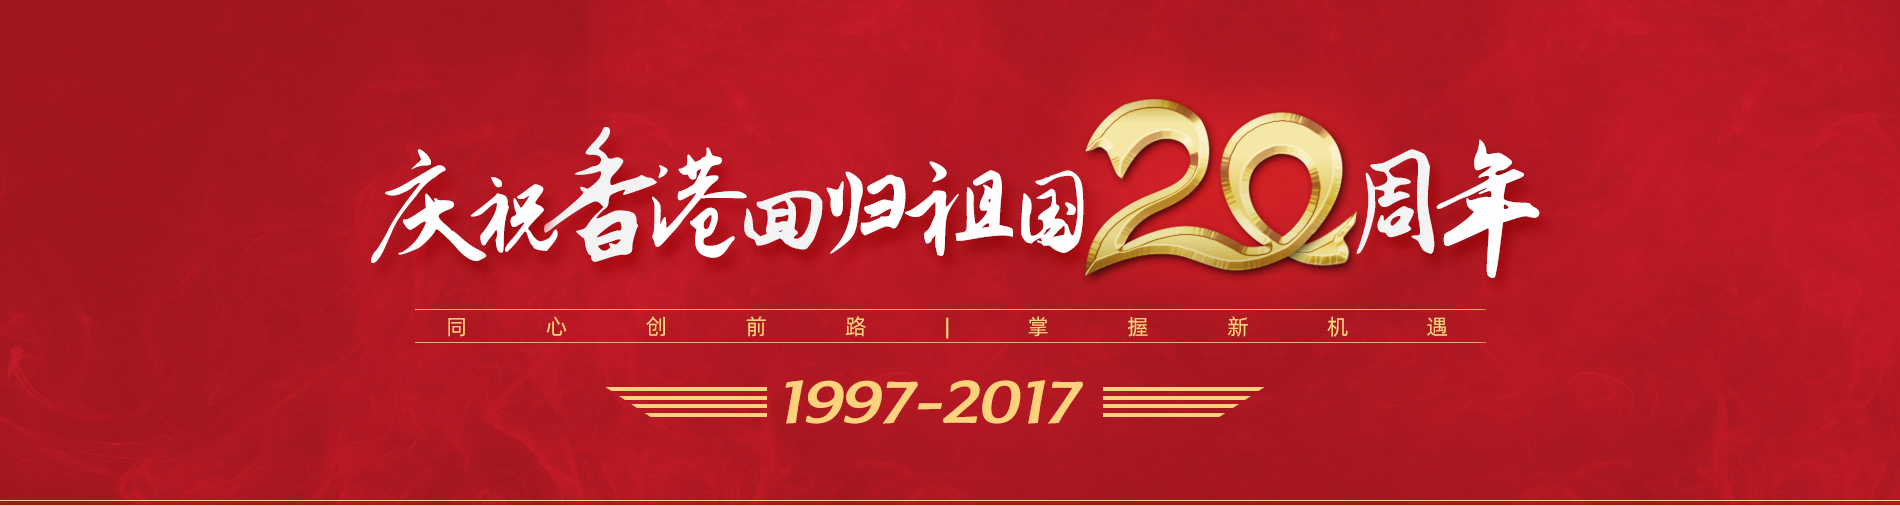 庆祝香港回归20周年